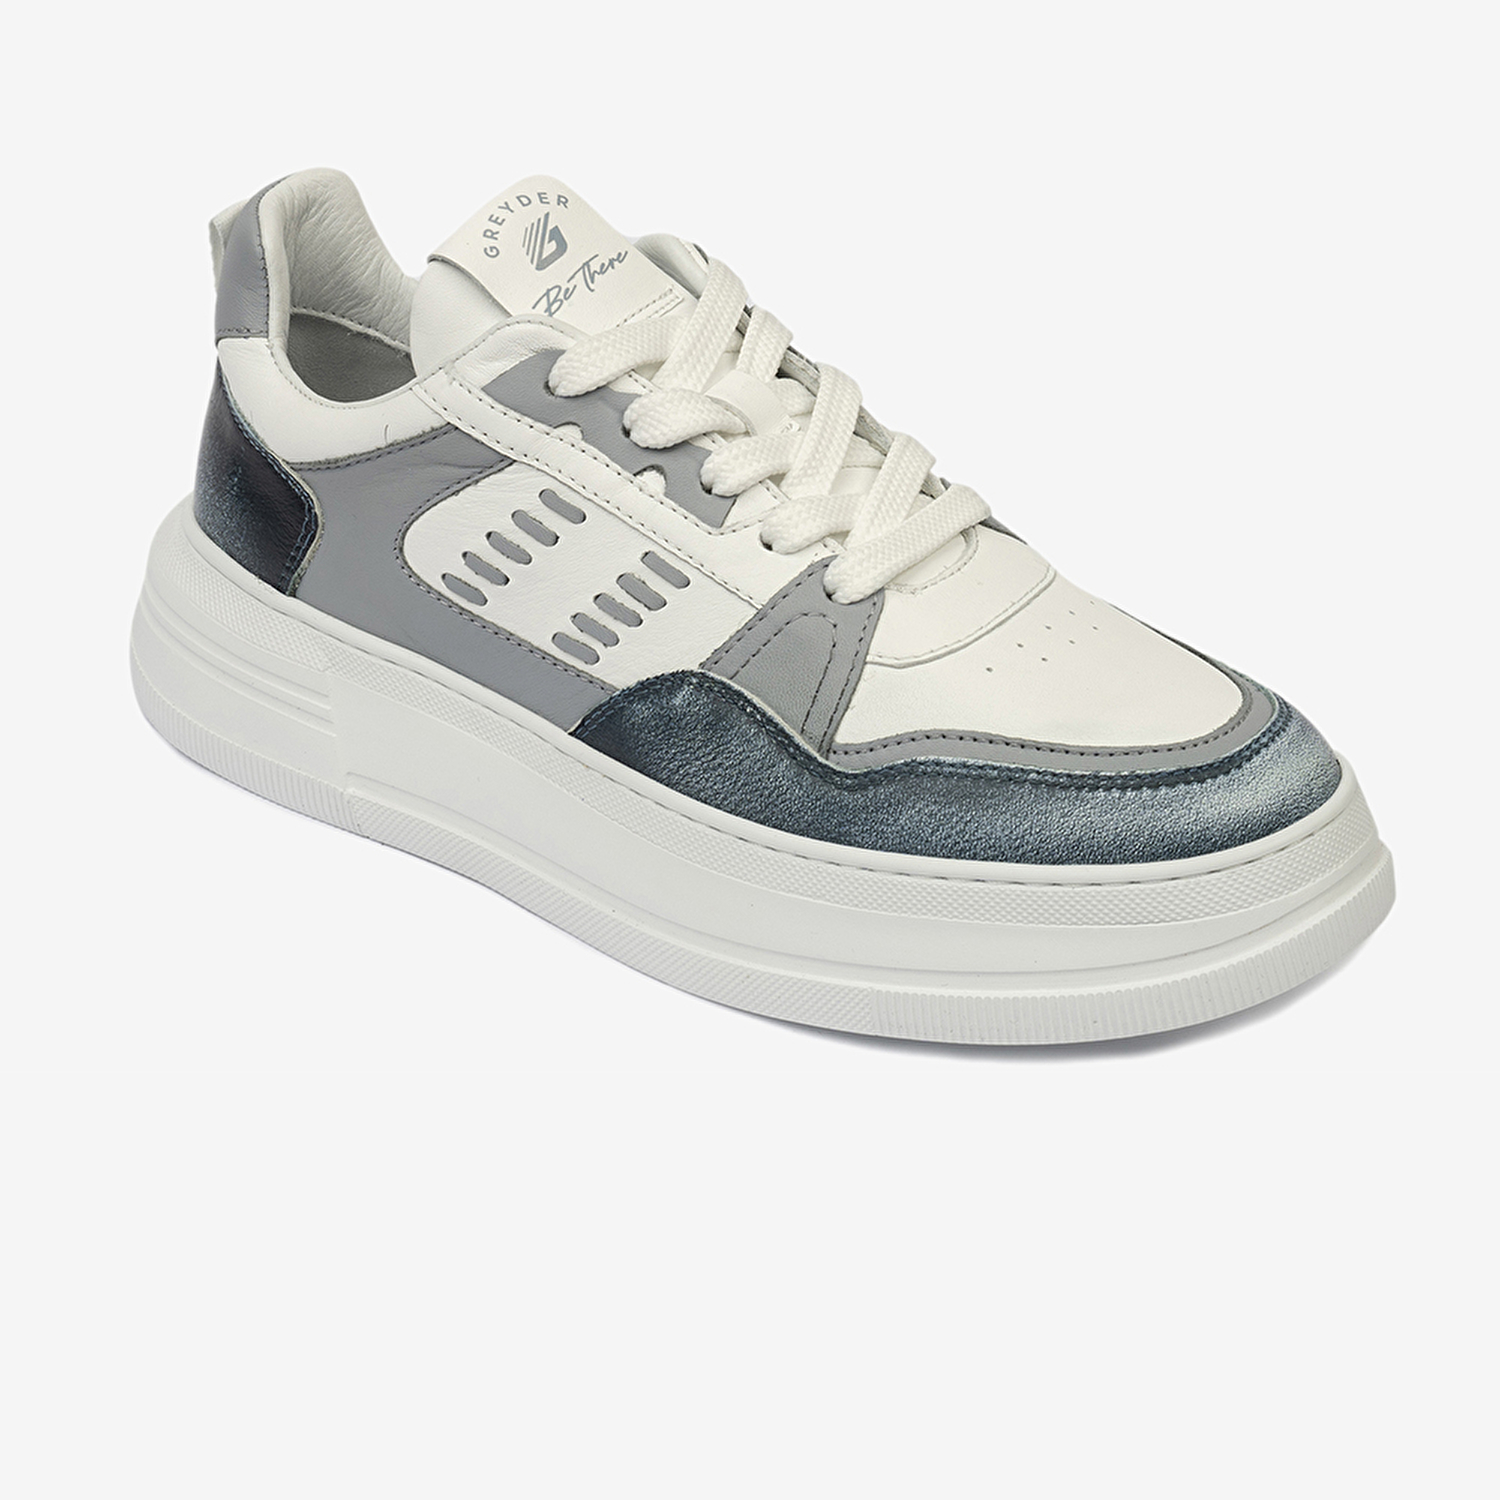 Kadın Mavi Beyaz Hakiki Deri Sneaker Ayakkabı 4Y2SA33220-1